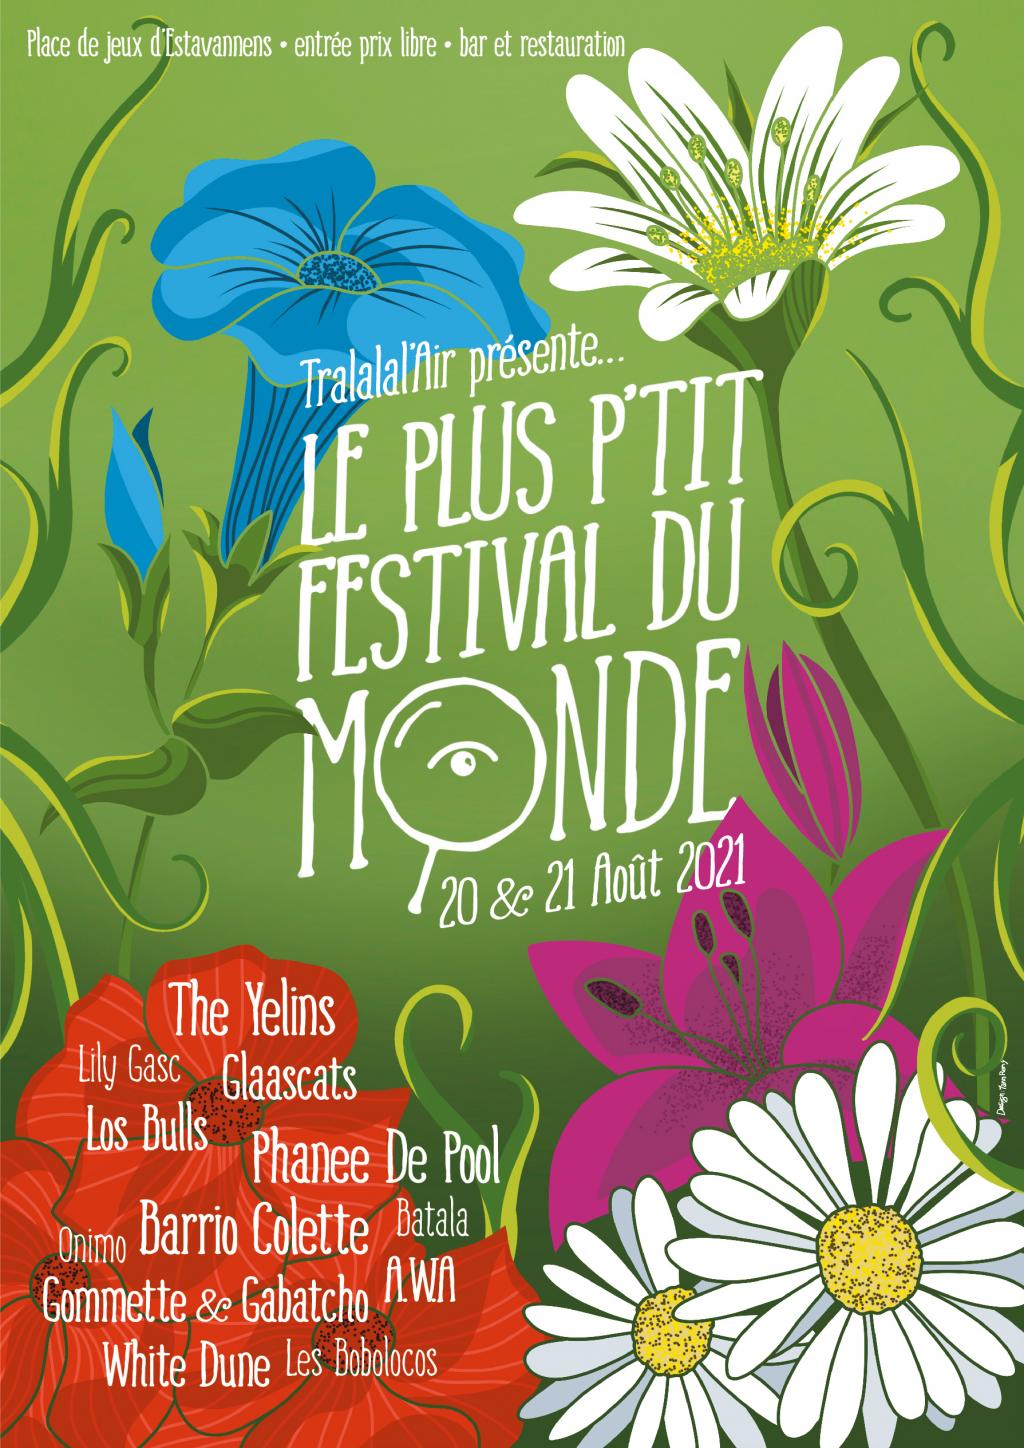 Le Plus P'tit Festival du Monde